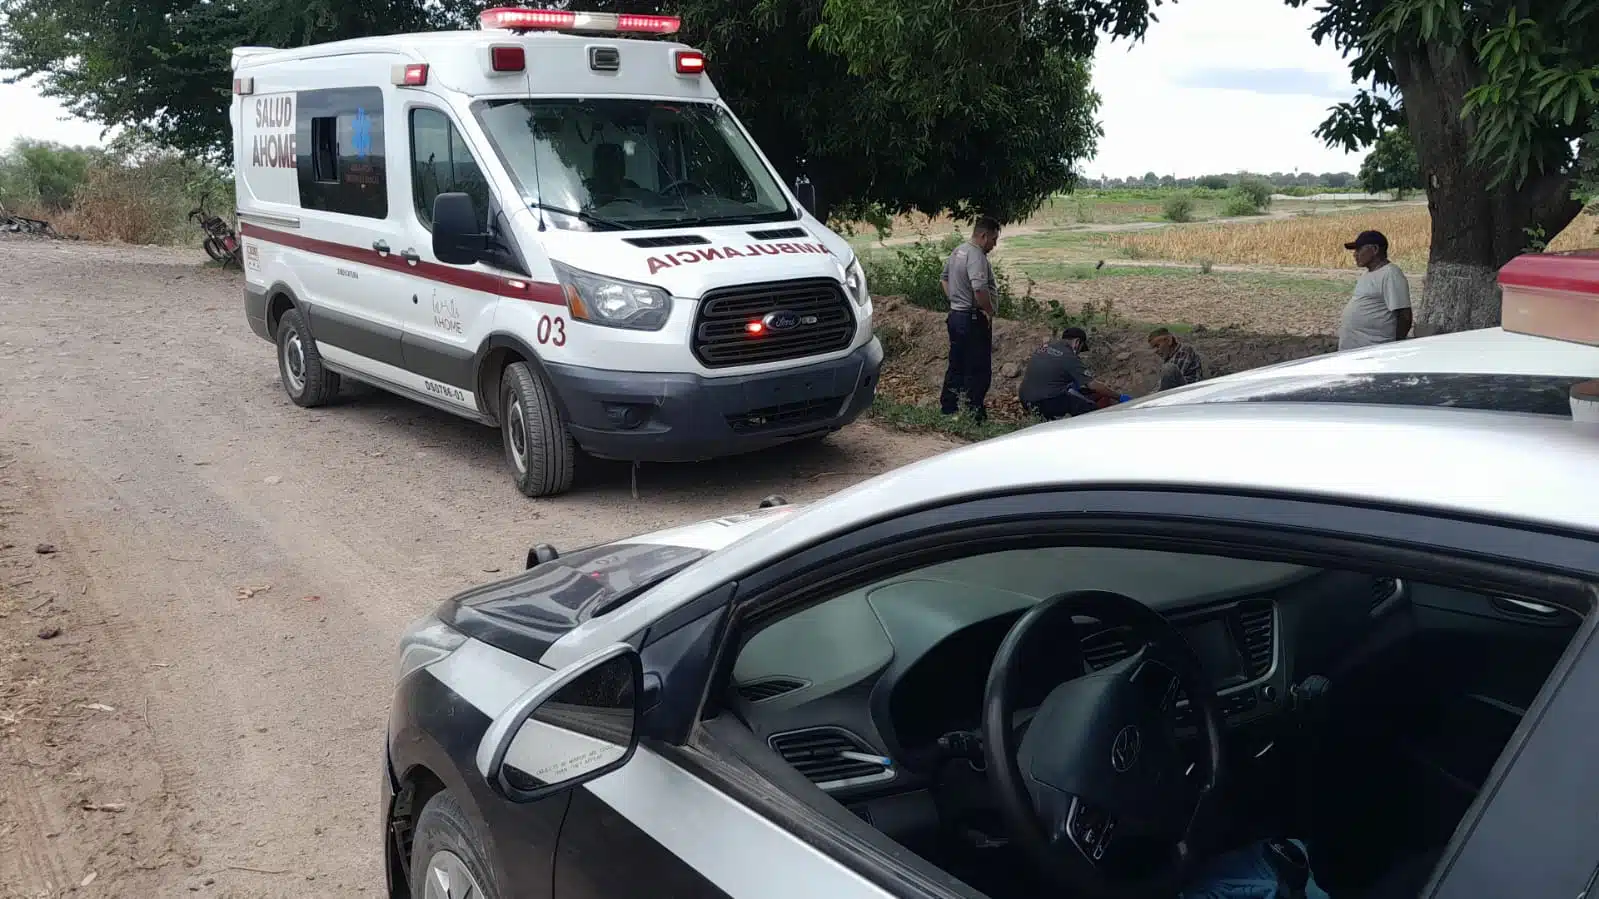 En primer plano una patrulla de la Policía Municipal, de fondo una ambulancia de SUMMA en campos de cultivo de Ahome